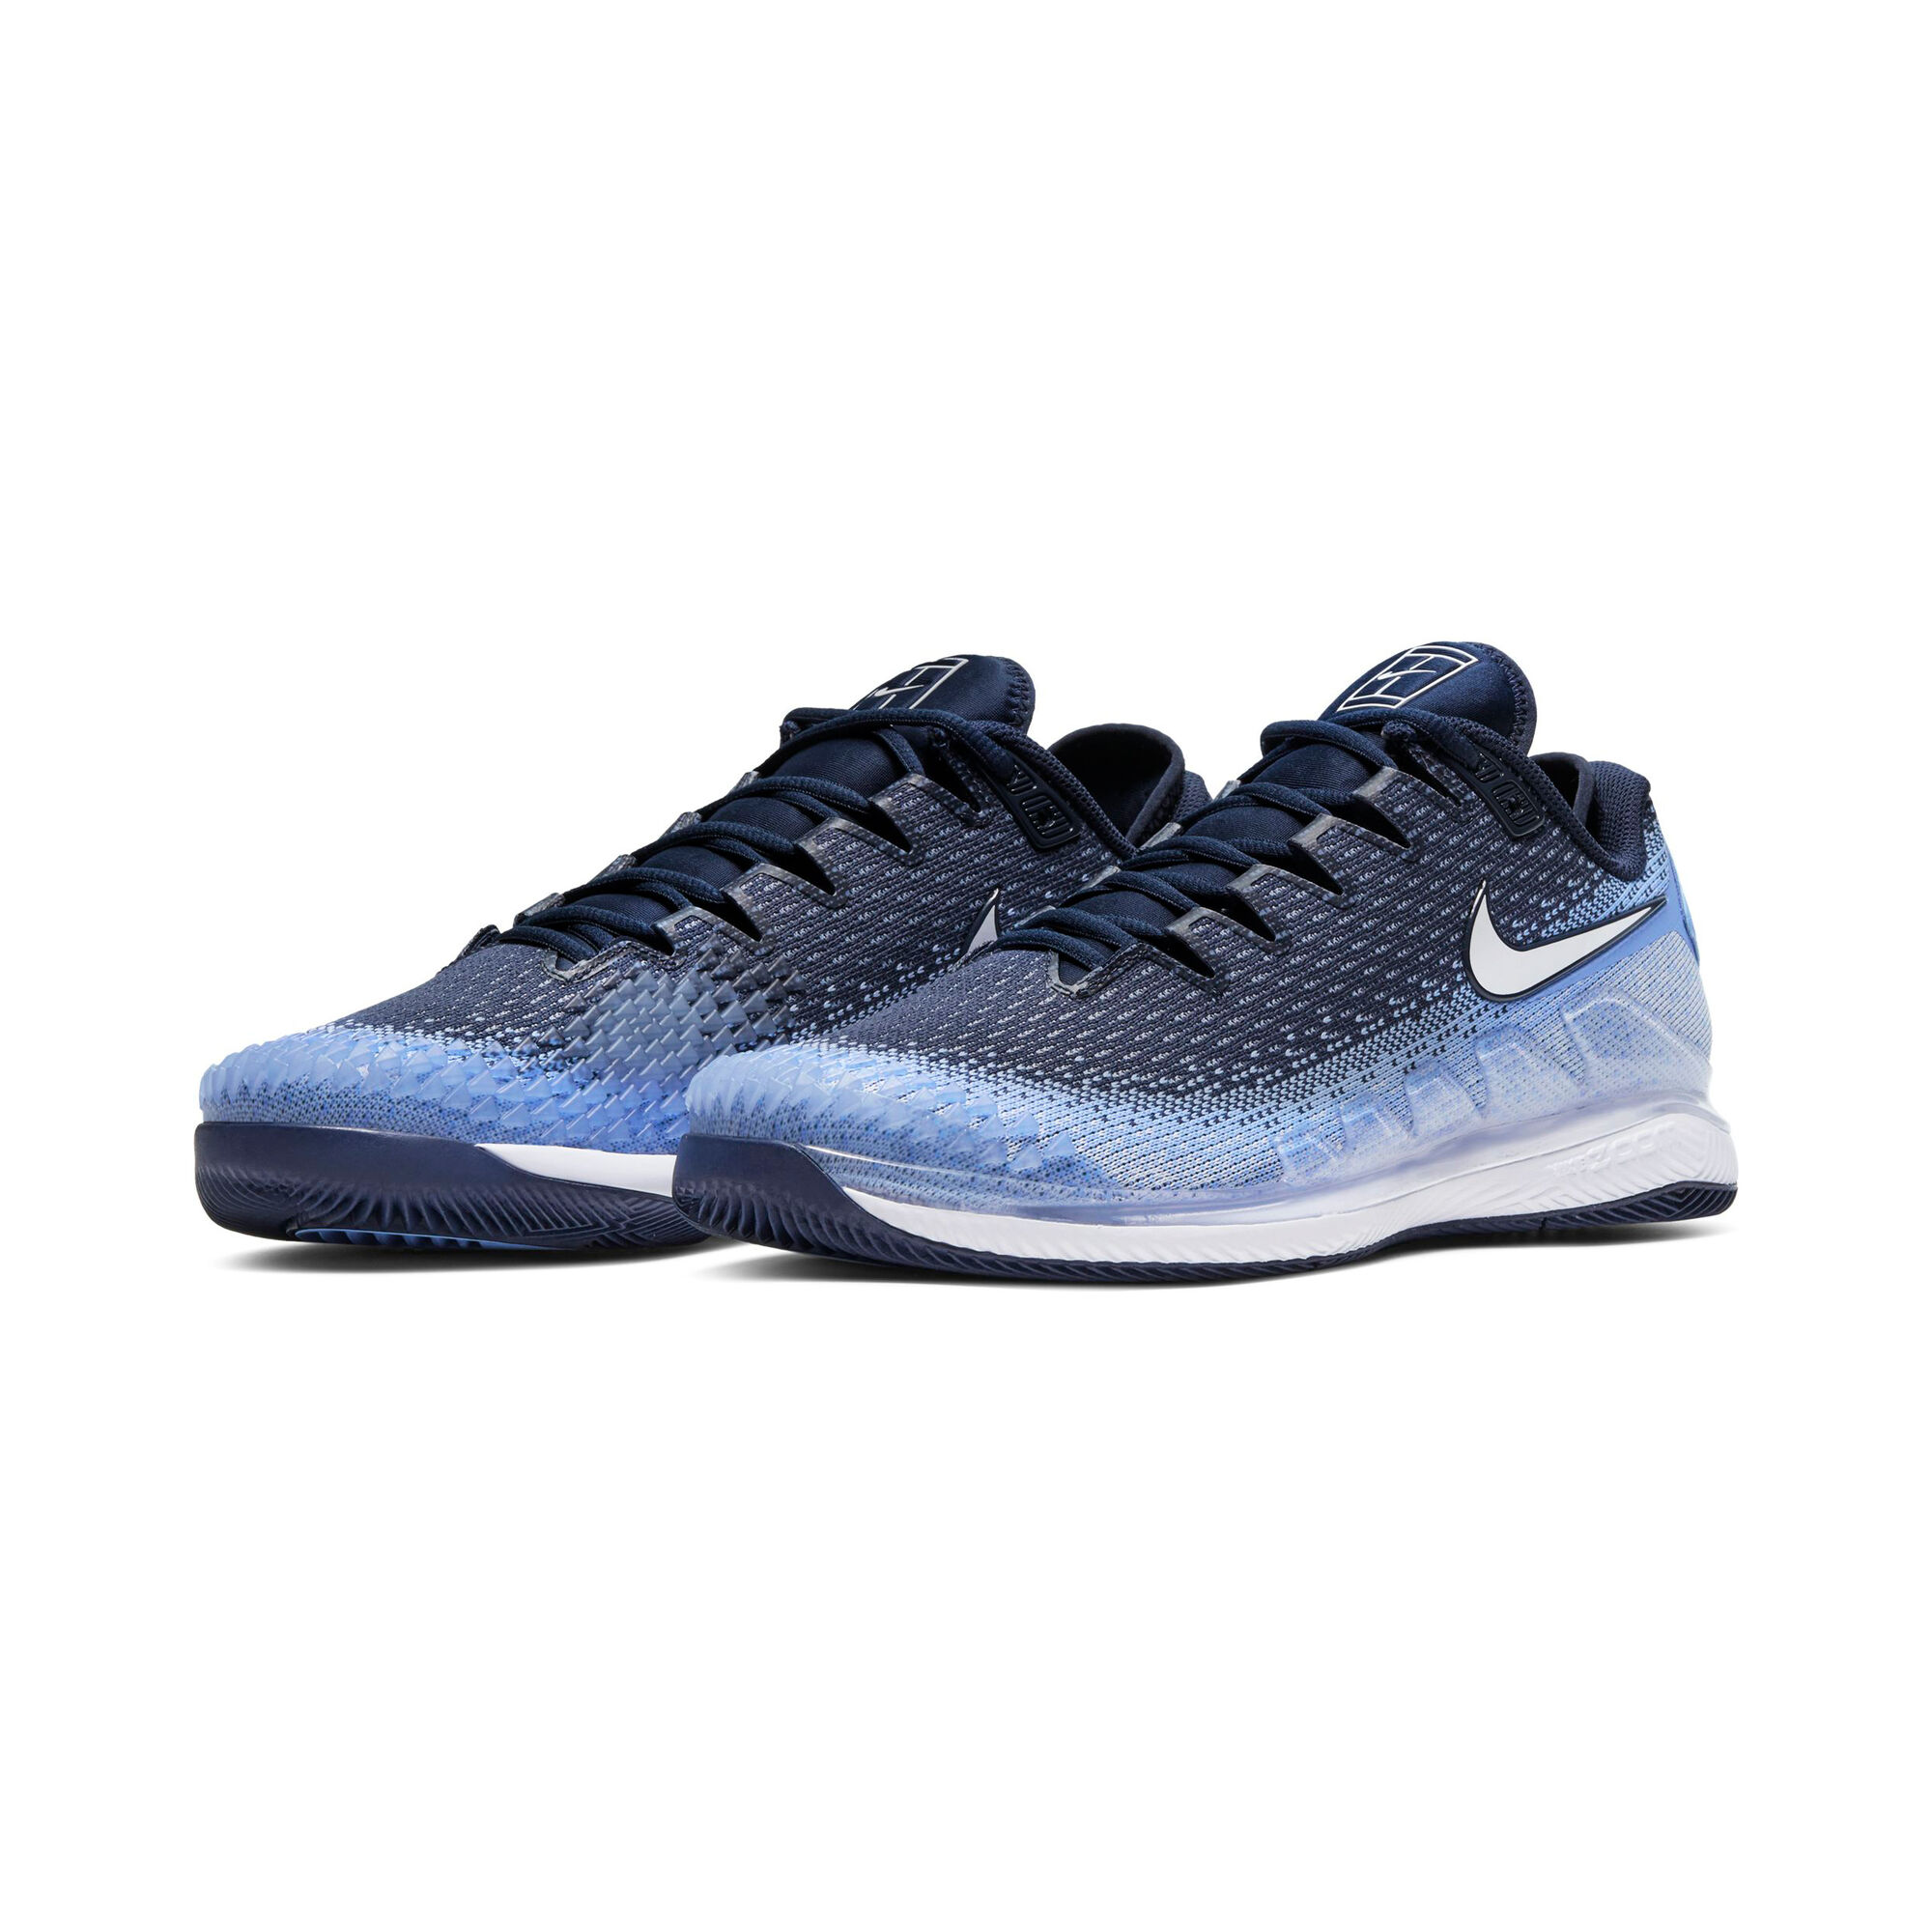 Ellendig Makkelijker maken deze Nike Air Zoom Vapor X Knit Allcourt Schoen Heren - Lichtblauw, Donkerblauw  online kopen | Tennis-Point